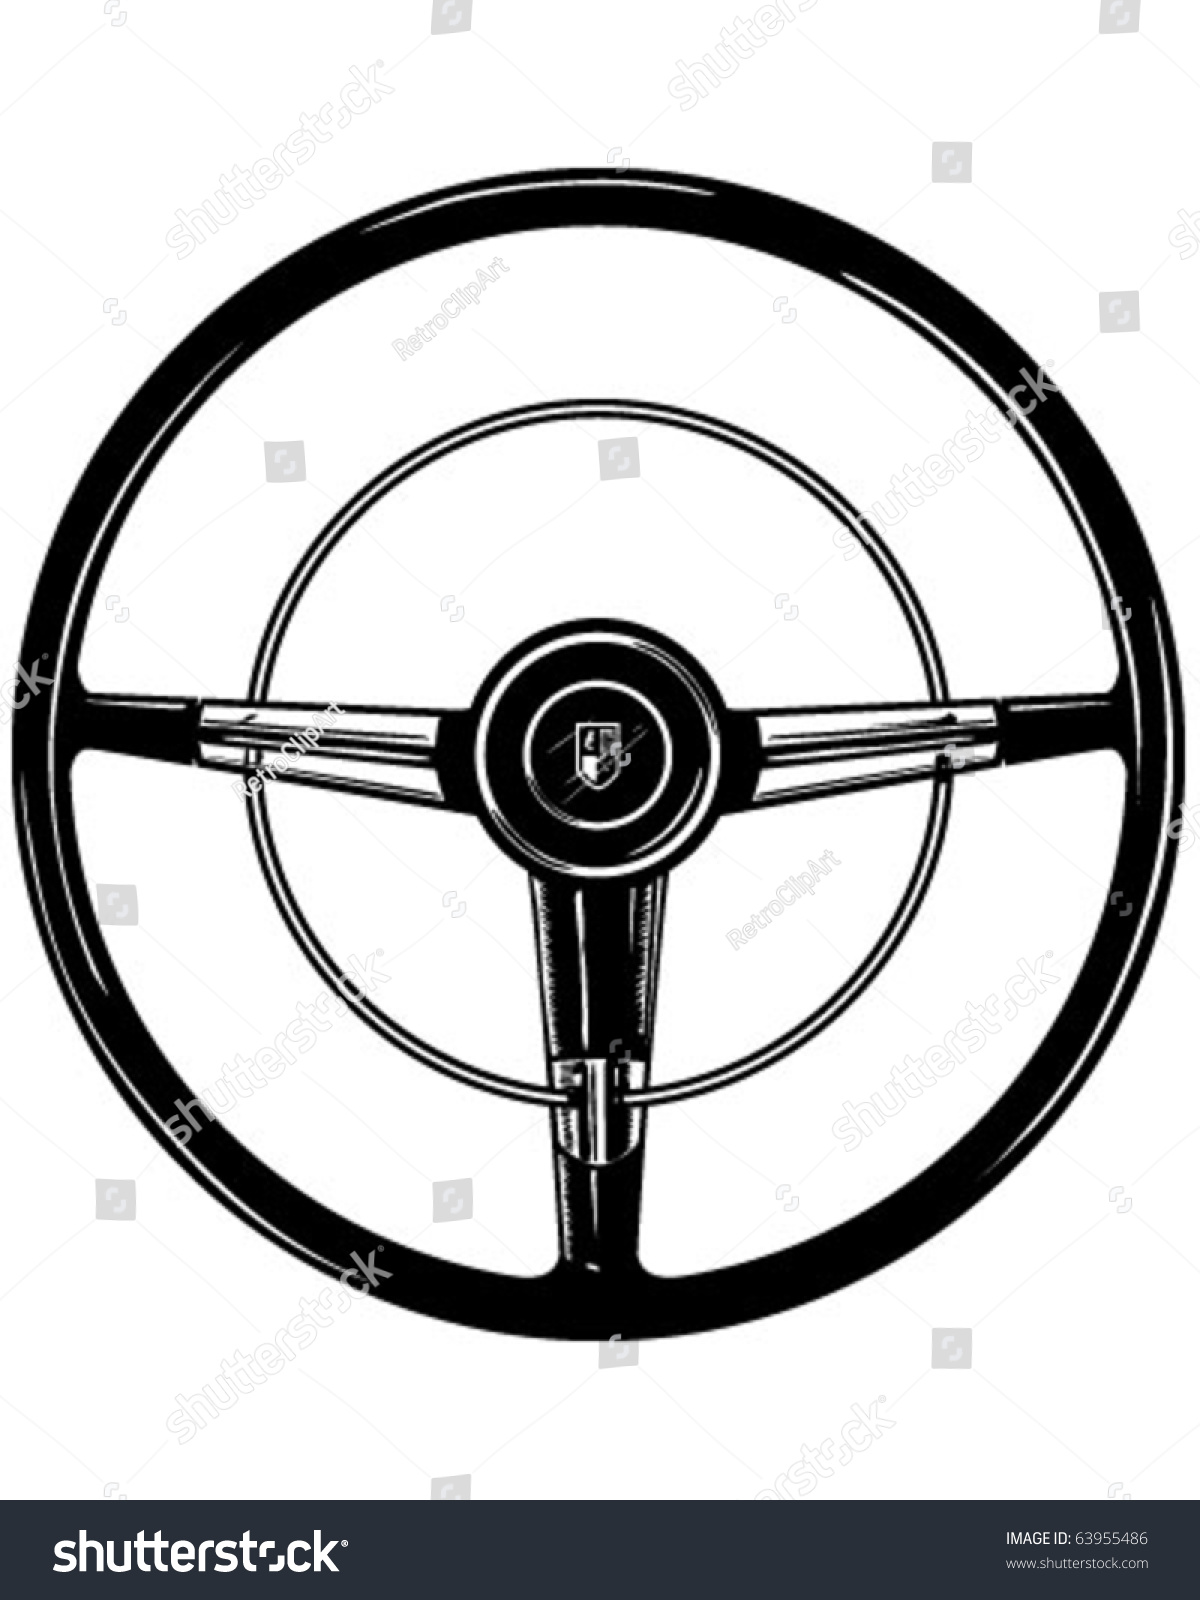 clip art car wheel - photo #42